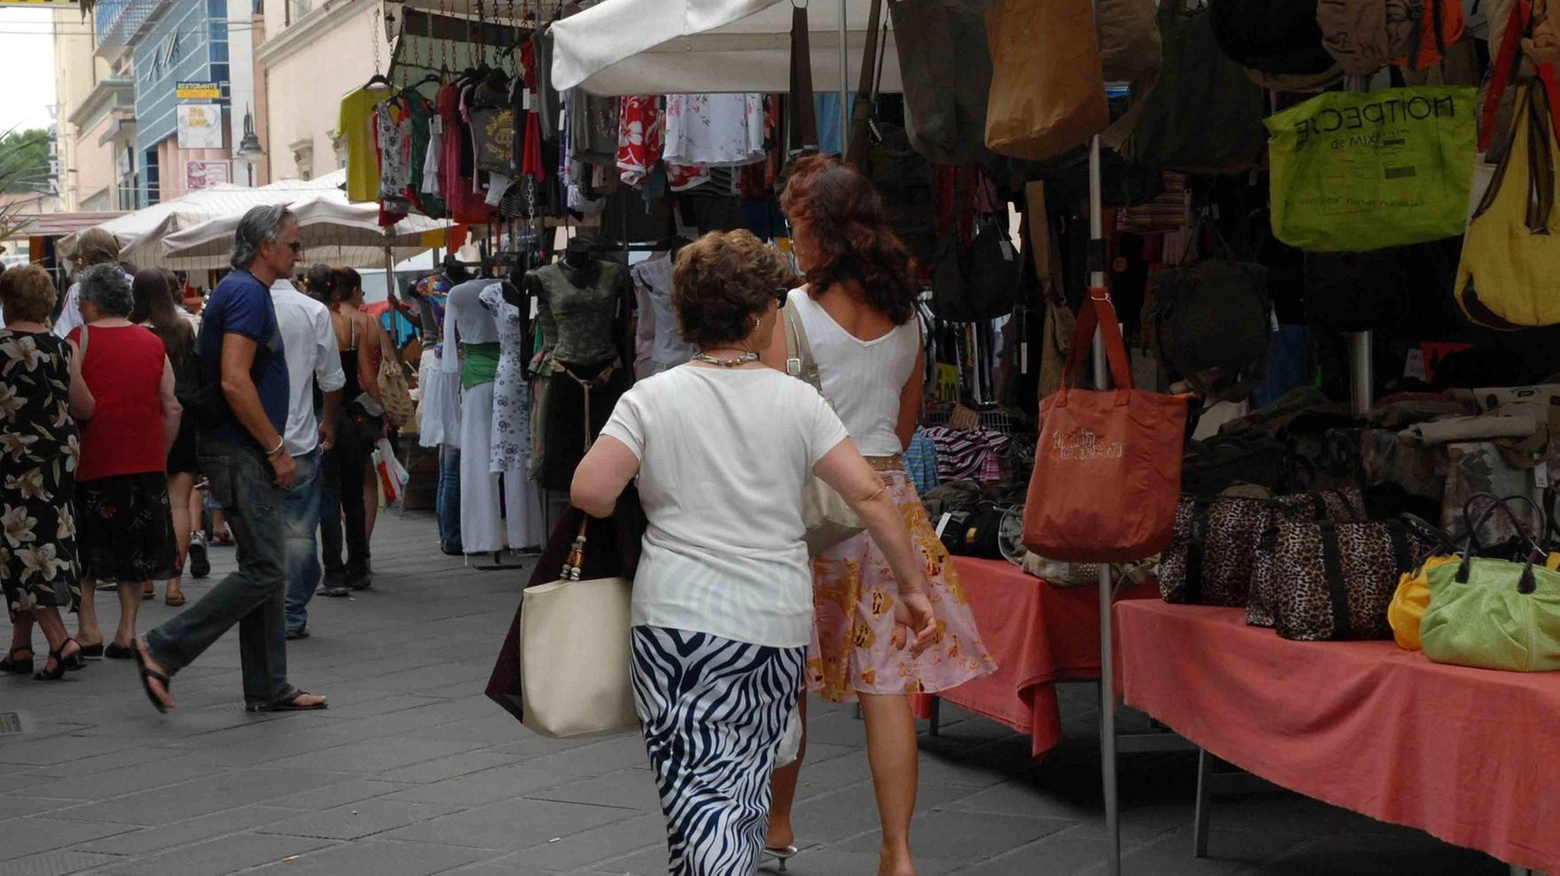 Ipotesi mercato nel viale Roma. I residenti ’bocciano’ il ritorno: "Fu un’esperienza disastrosa"